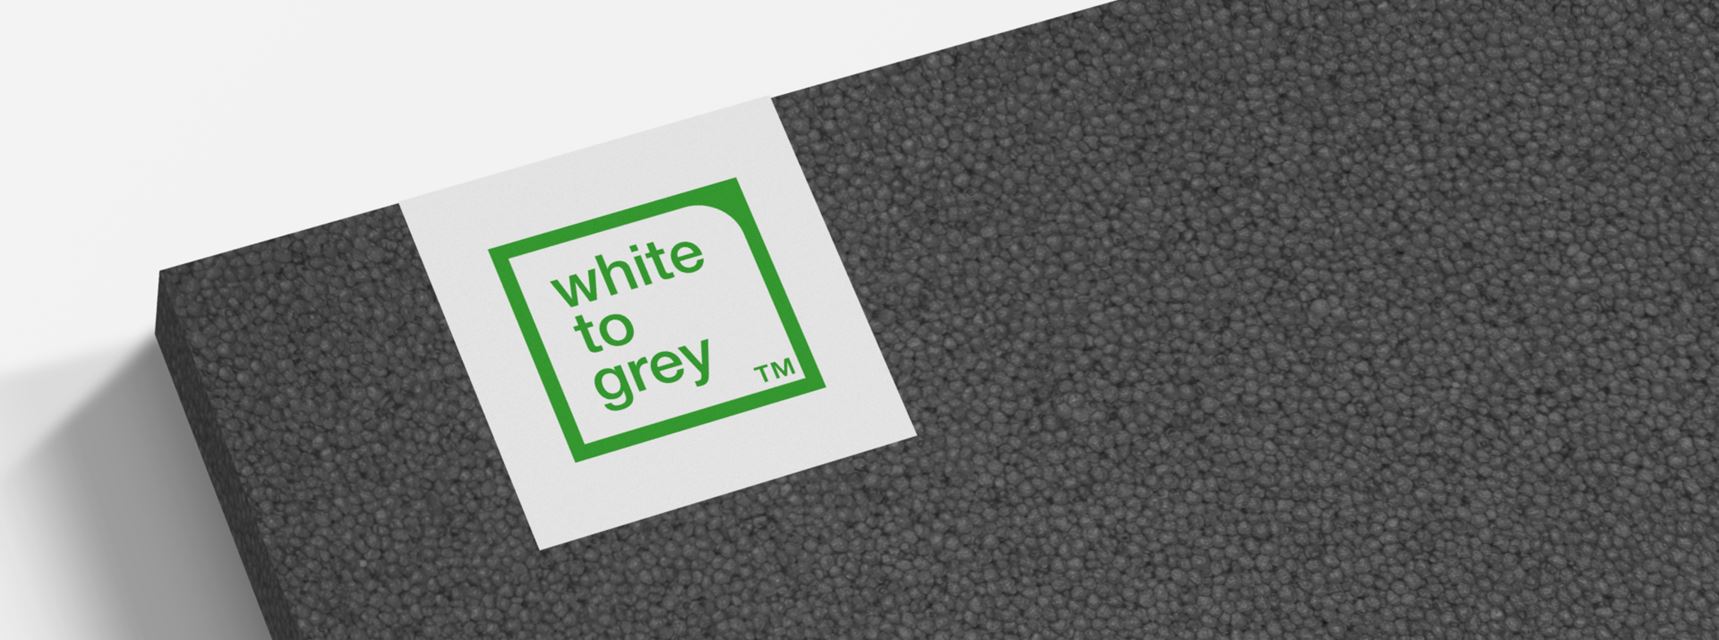 White to Grey™